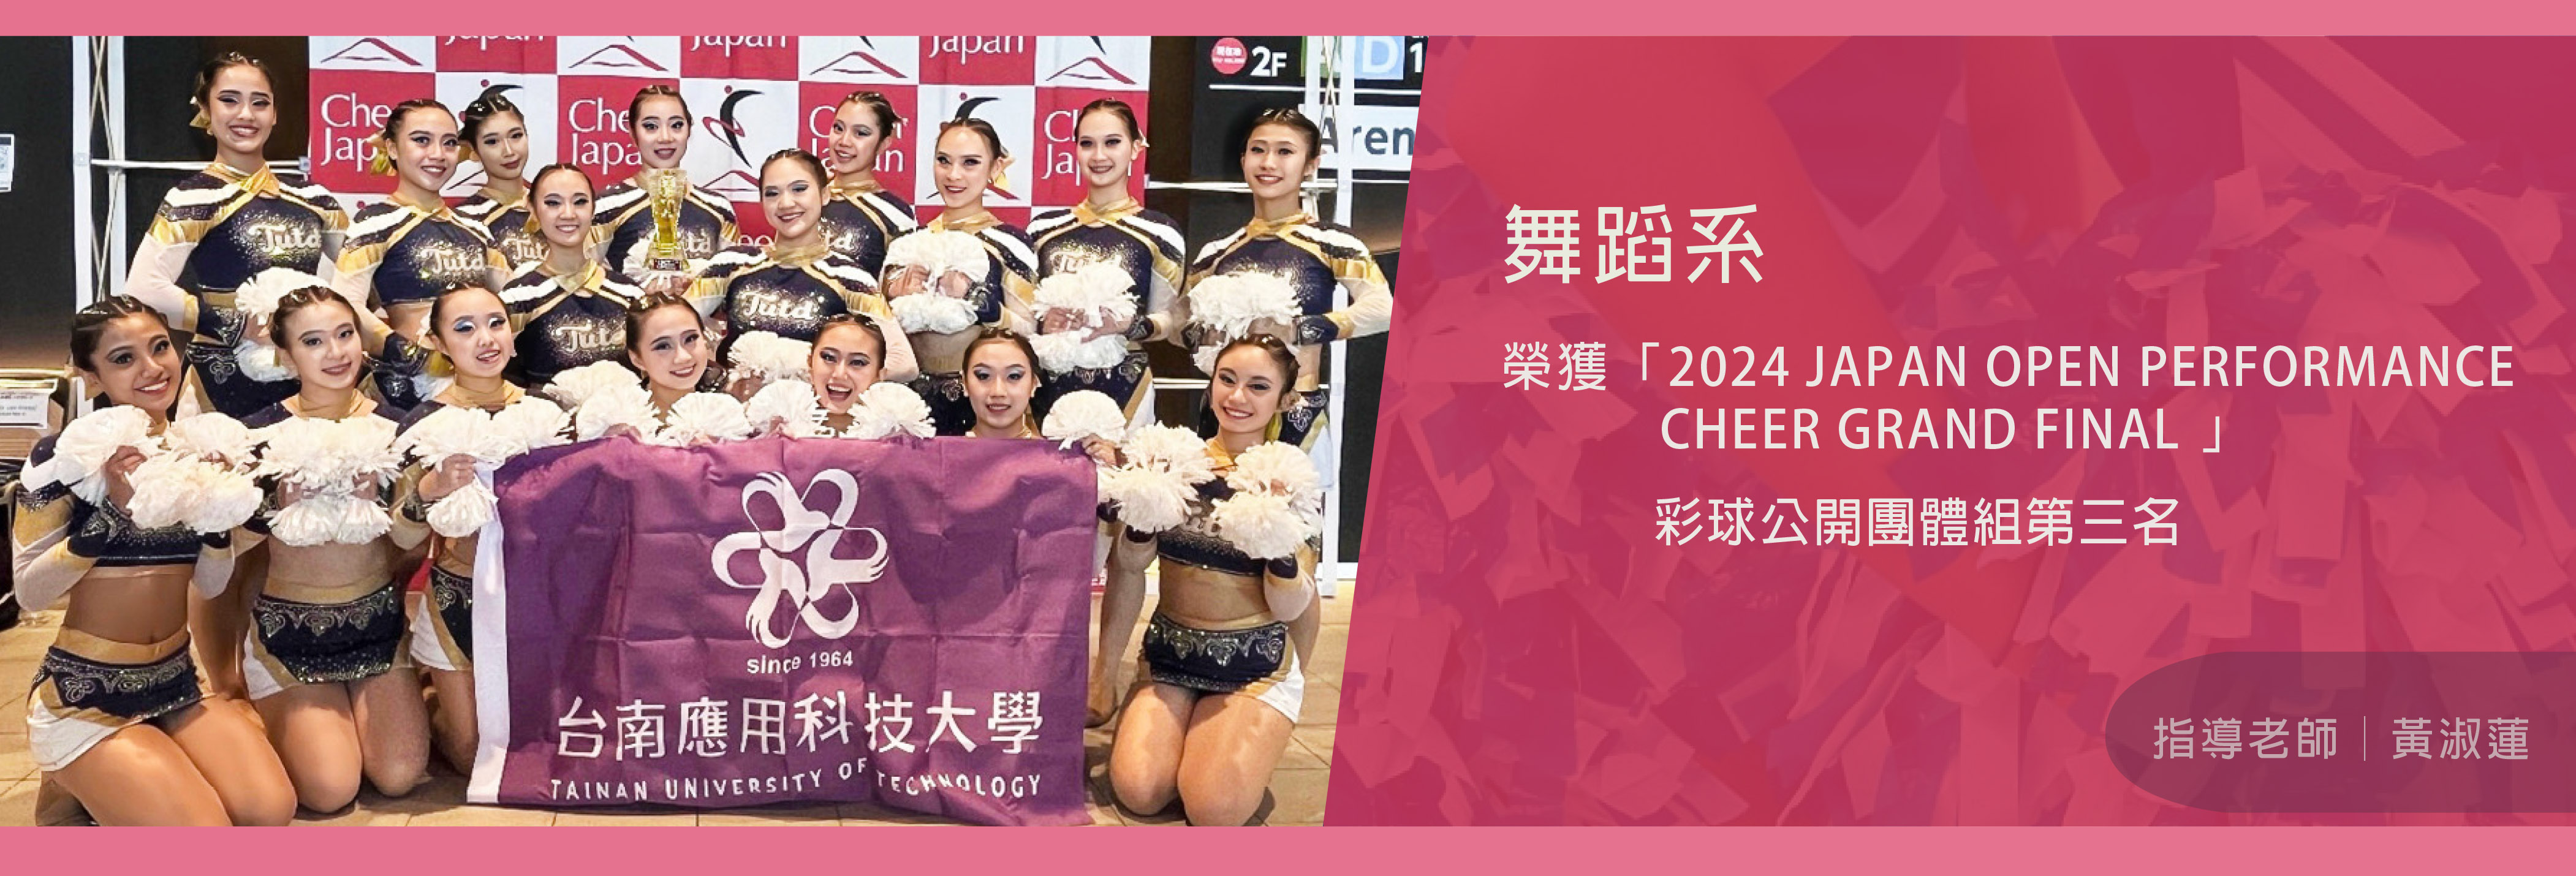 舞蹈系榮獲2024日本啦啦隊公開賽 (2024 JAPAN OPEN PERFORMANCE CHEER GRAND FINAL)彩球公開團體組第三名